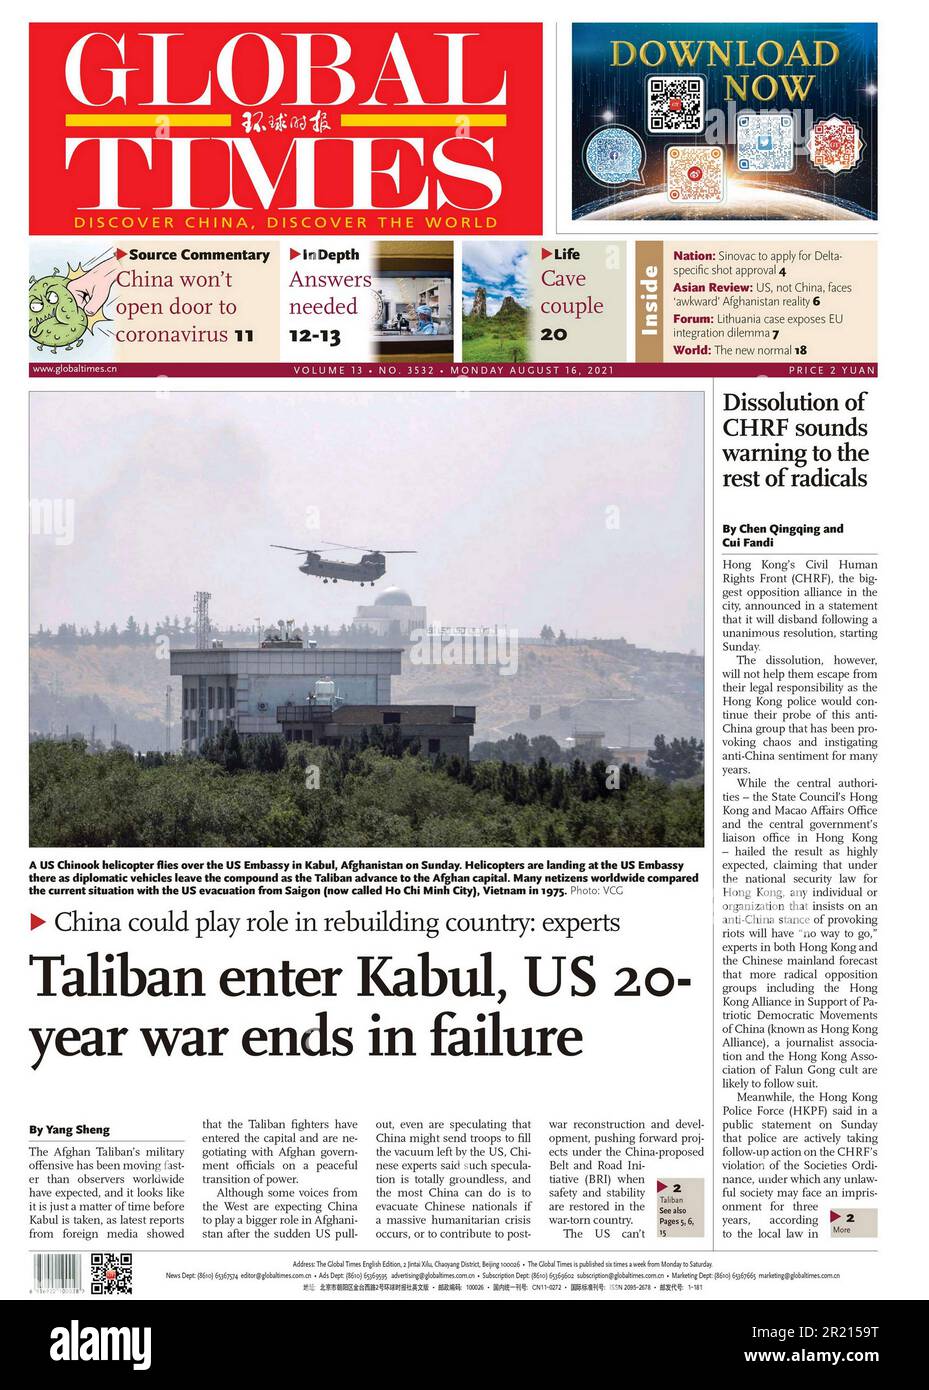 Titular del periódico Global Times (chino), Evacuación de Afganistán. 16th de agosto de 2021. Las evacuaciones a gran escala de ciudadanos extranjeros y algunos ciudadanos afganos vulnerables tuvieron lugar en medio de la retirada de las fuerzas estadounidenses y de la OTAN al final de la guerra de 2001-2021 en Afganistán. Los talibanes tomaron el control de Kabul y declararon la victoria el 15 de agosto de 2021, y la República Islámica de Afganistán, respaldada por la OTAN, se derrumbó. Con los talibanes controlando toda la ciudad, excepto el aeropuerto internacional de Hamid Karzai, Foto de stock